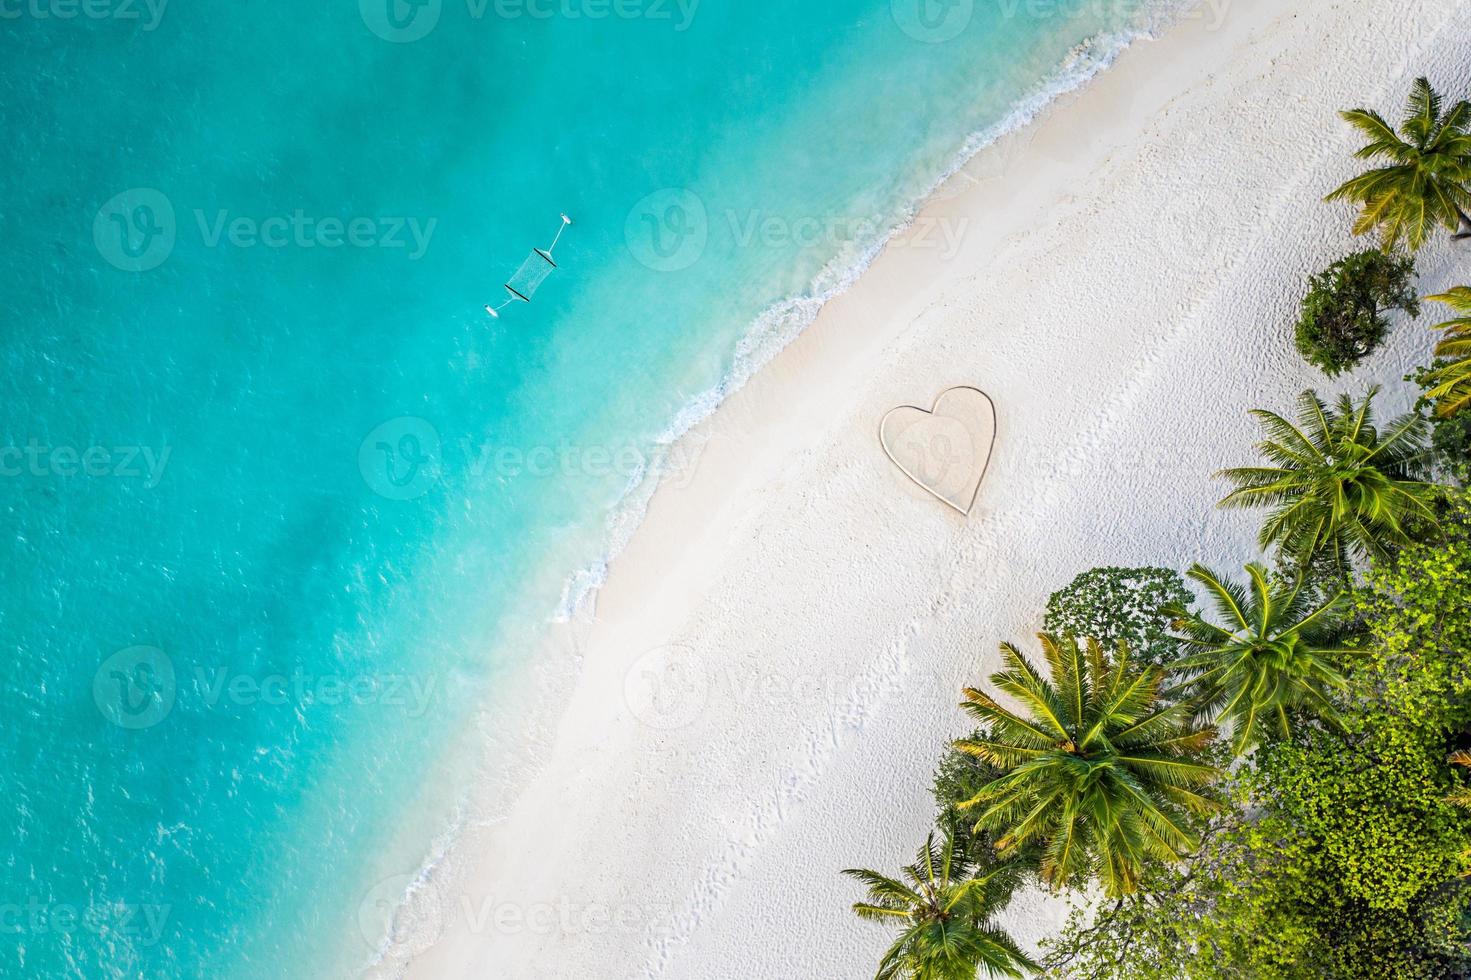 perfecte tekening van hartvorm in zacht zand prachtige zeegezicht achtergrond. romantische valentijnsdag of liefdesstrandscène, bovenaanzicht vanuit de lucht. romantiek, huwelijksreis in vakantie, zomerreizen. idyllische natuur foto